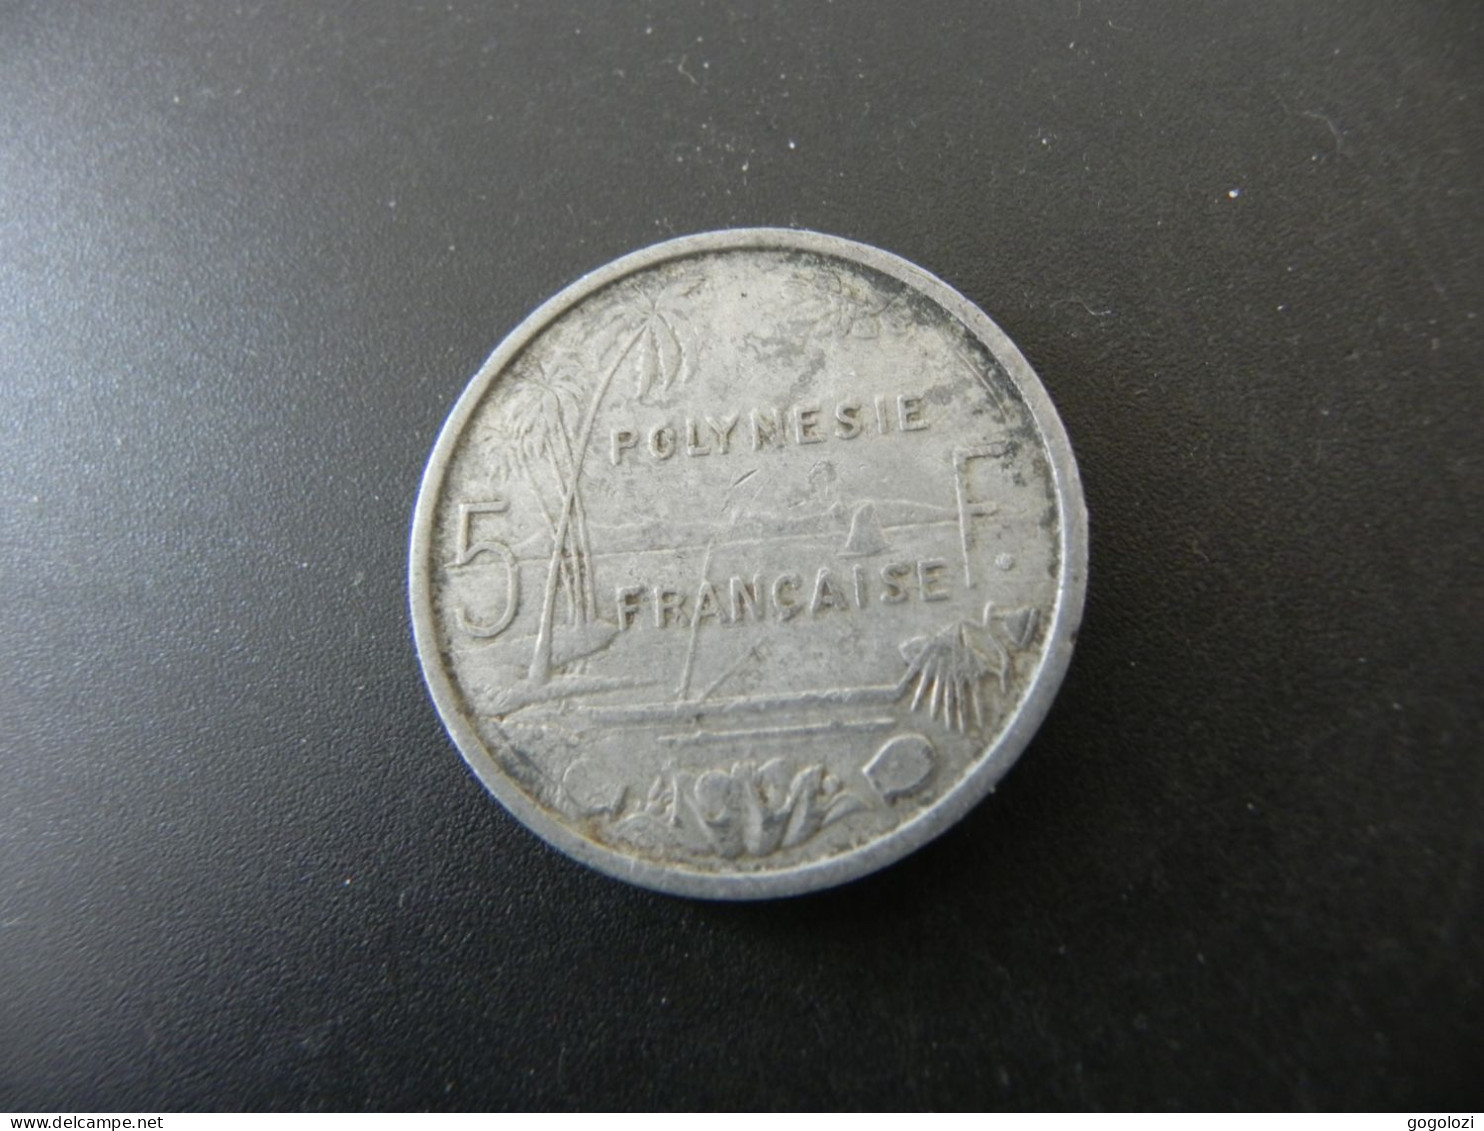 Polynesie Française 5 Francs 1965 - Frans-Polynesië